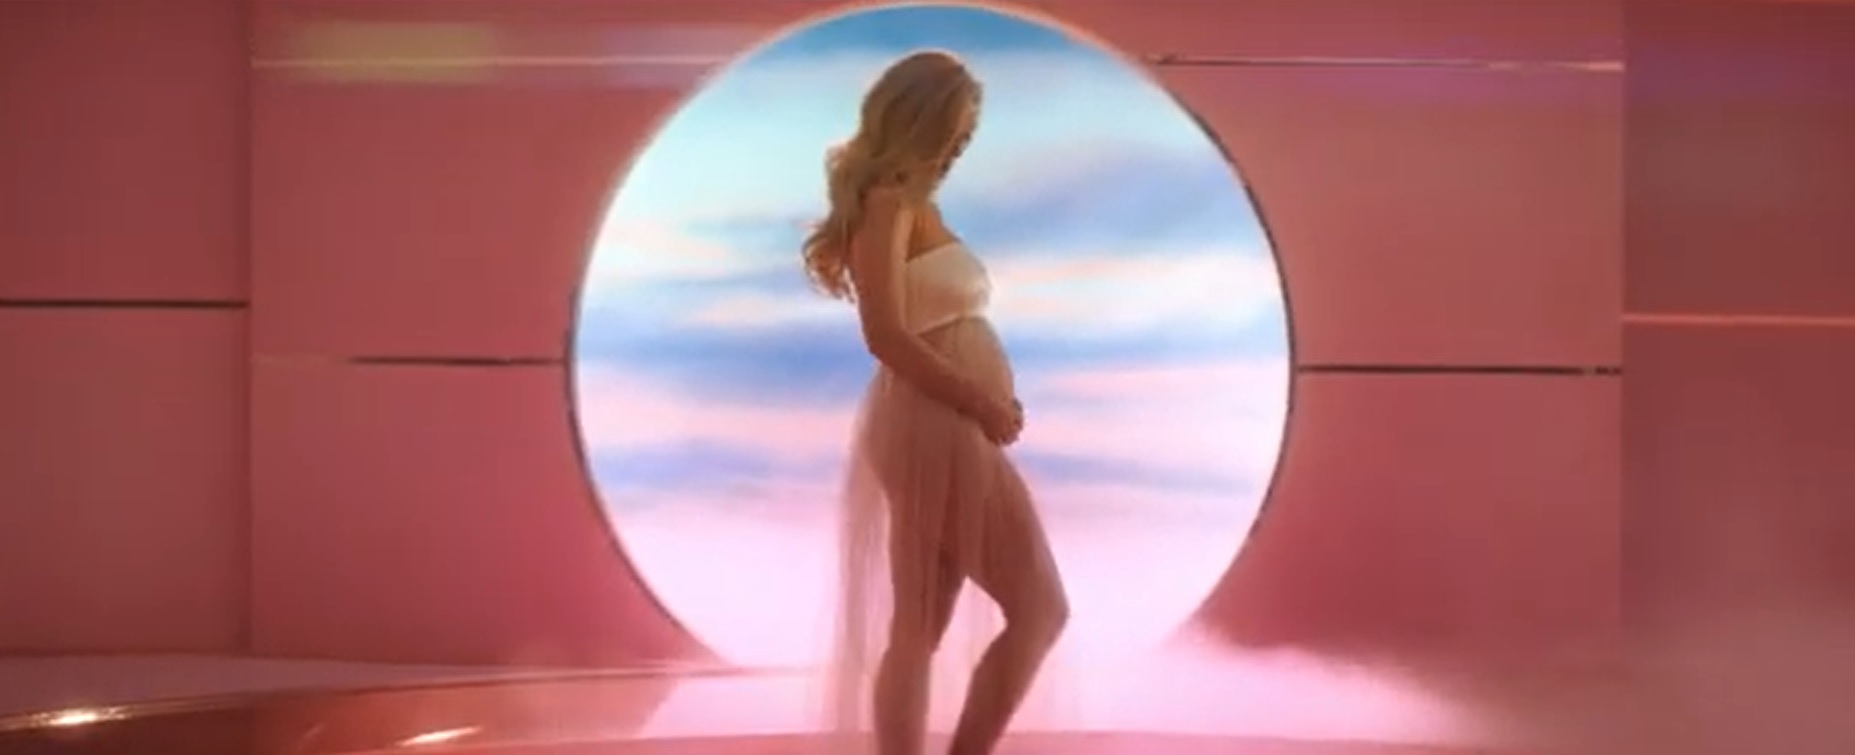 Katy Perry est enceinte de son premier enfant avec Orlando Bloom